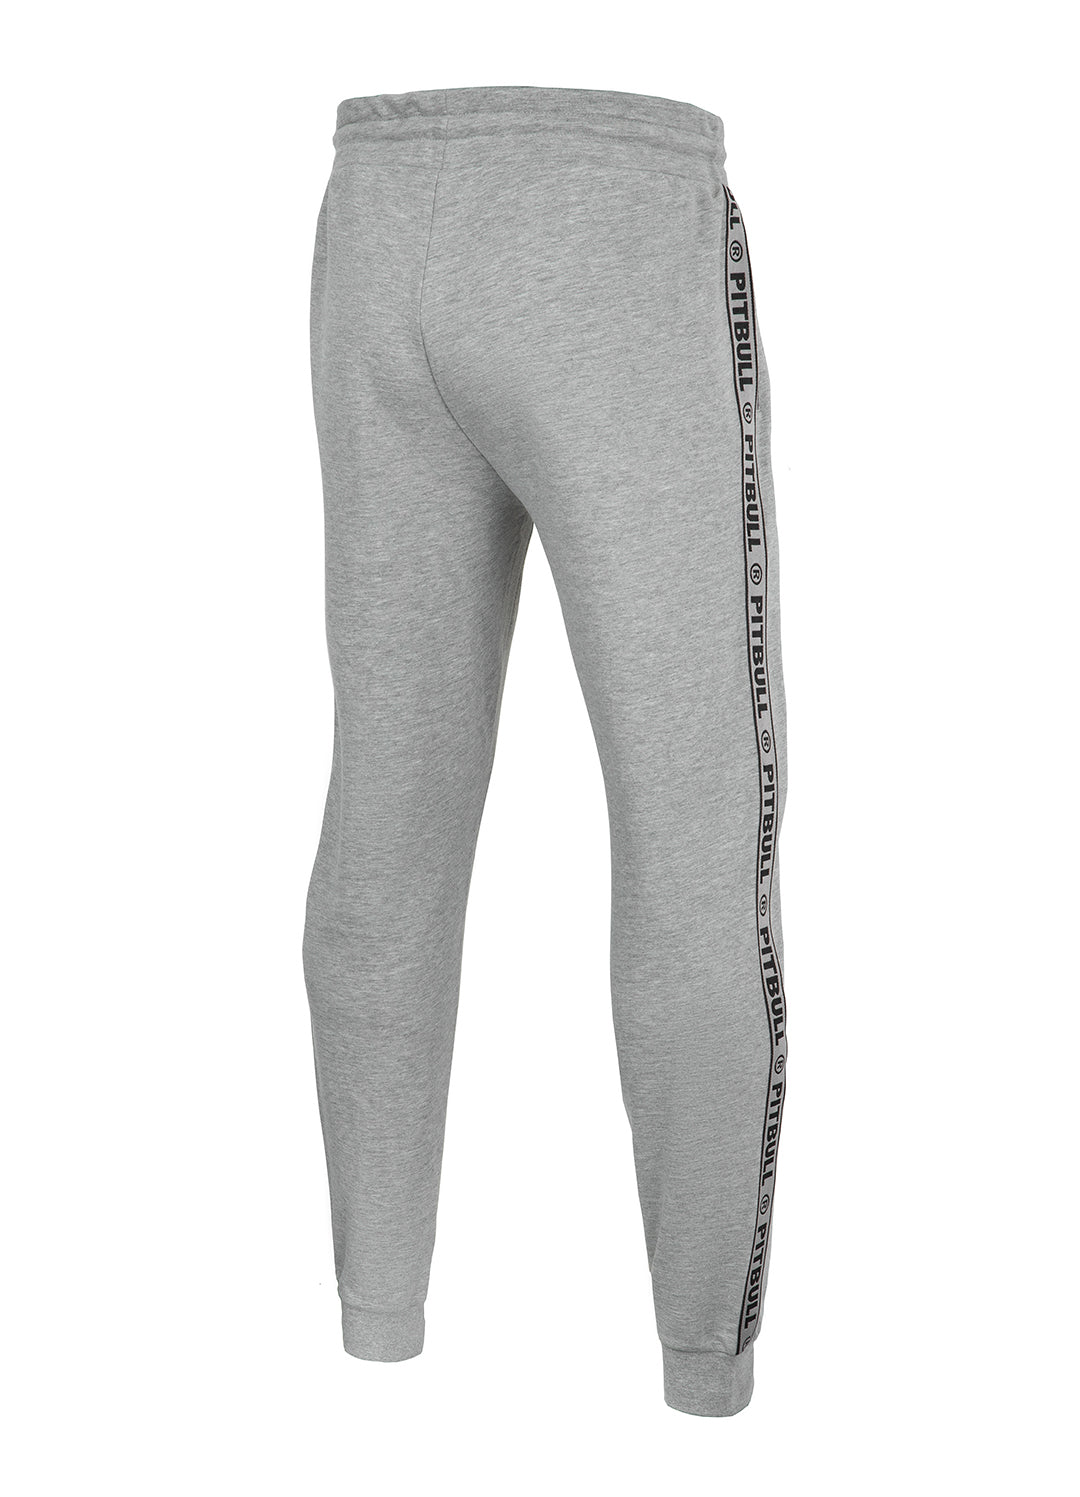 Jogging Pants MERIDAN Grey - Pitbull West Coast International Store 